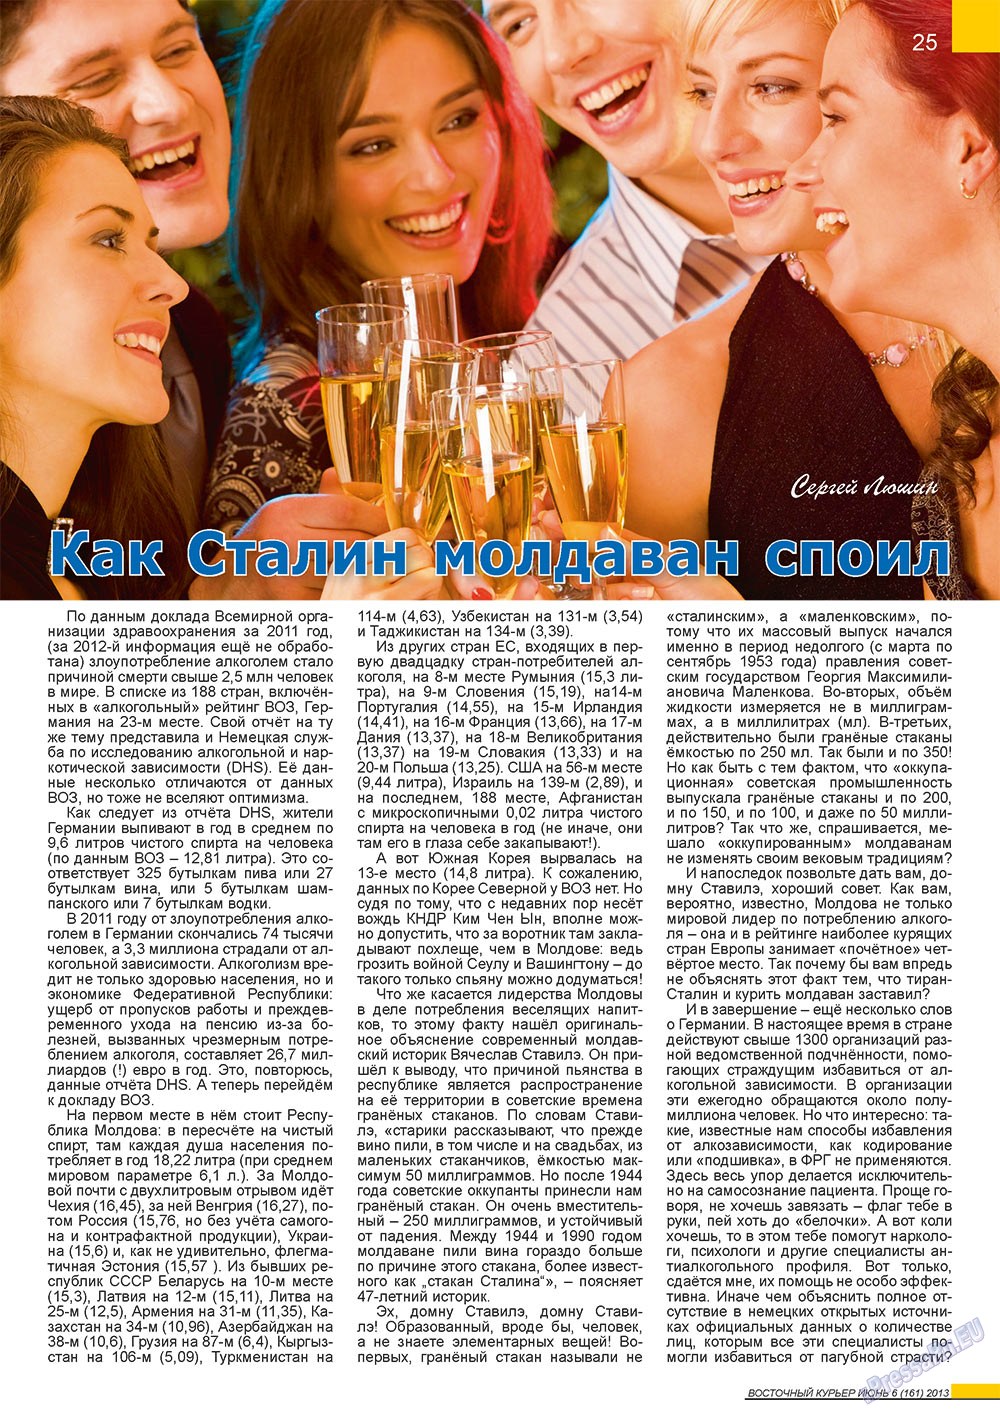 Восточный курьер (журнал). 2013 год, номер 6, стр. 25